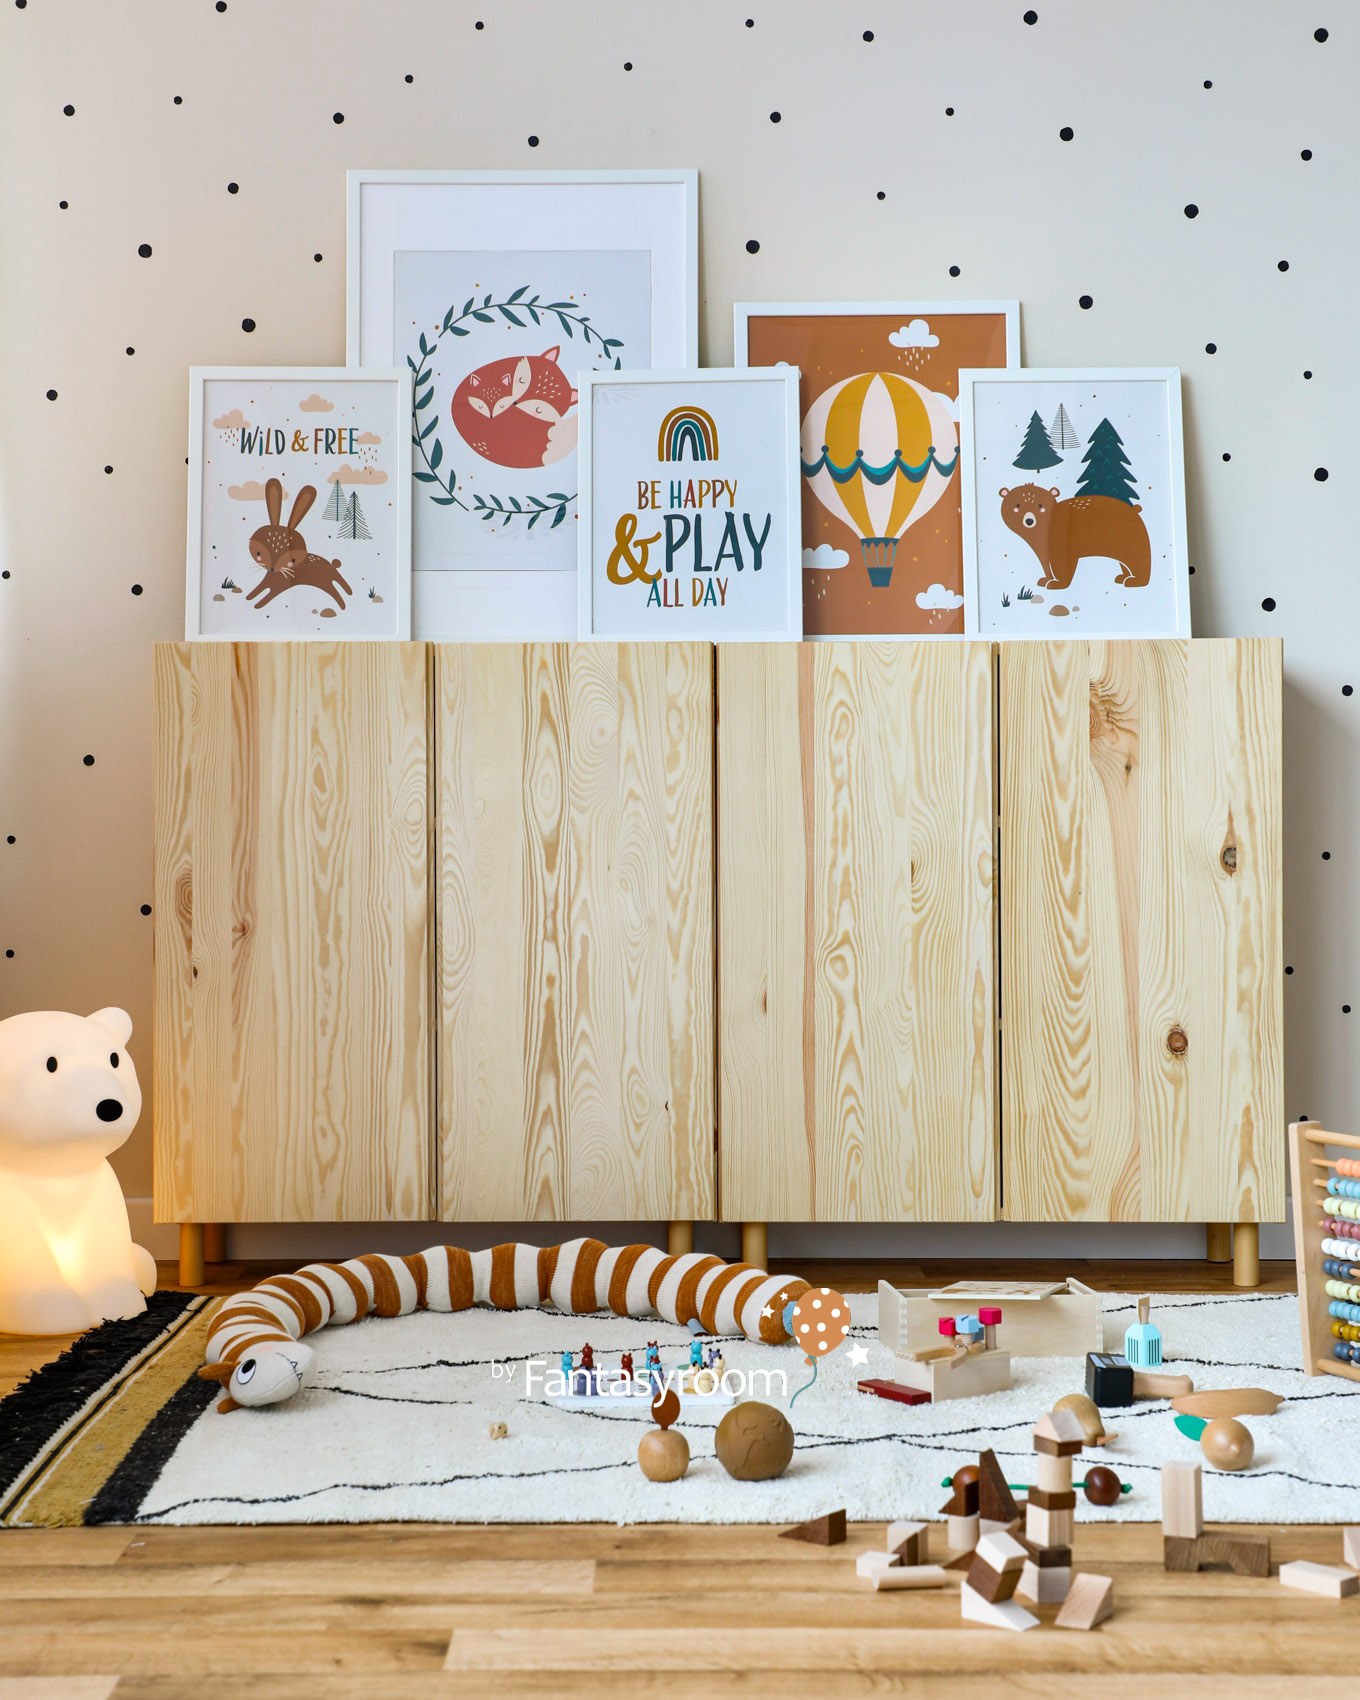 Kinderzimmer mit Kuschelteppich, Holzschränken, bunten Postern und Spielzeug